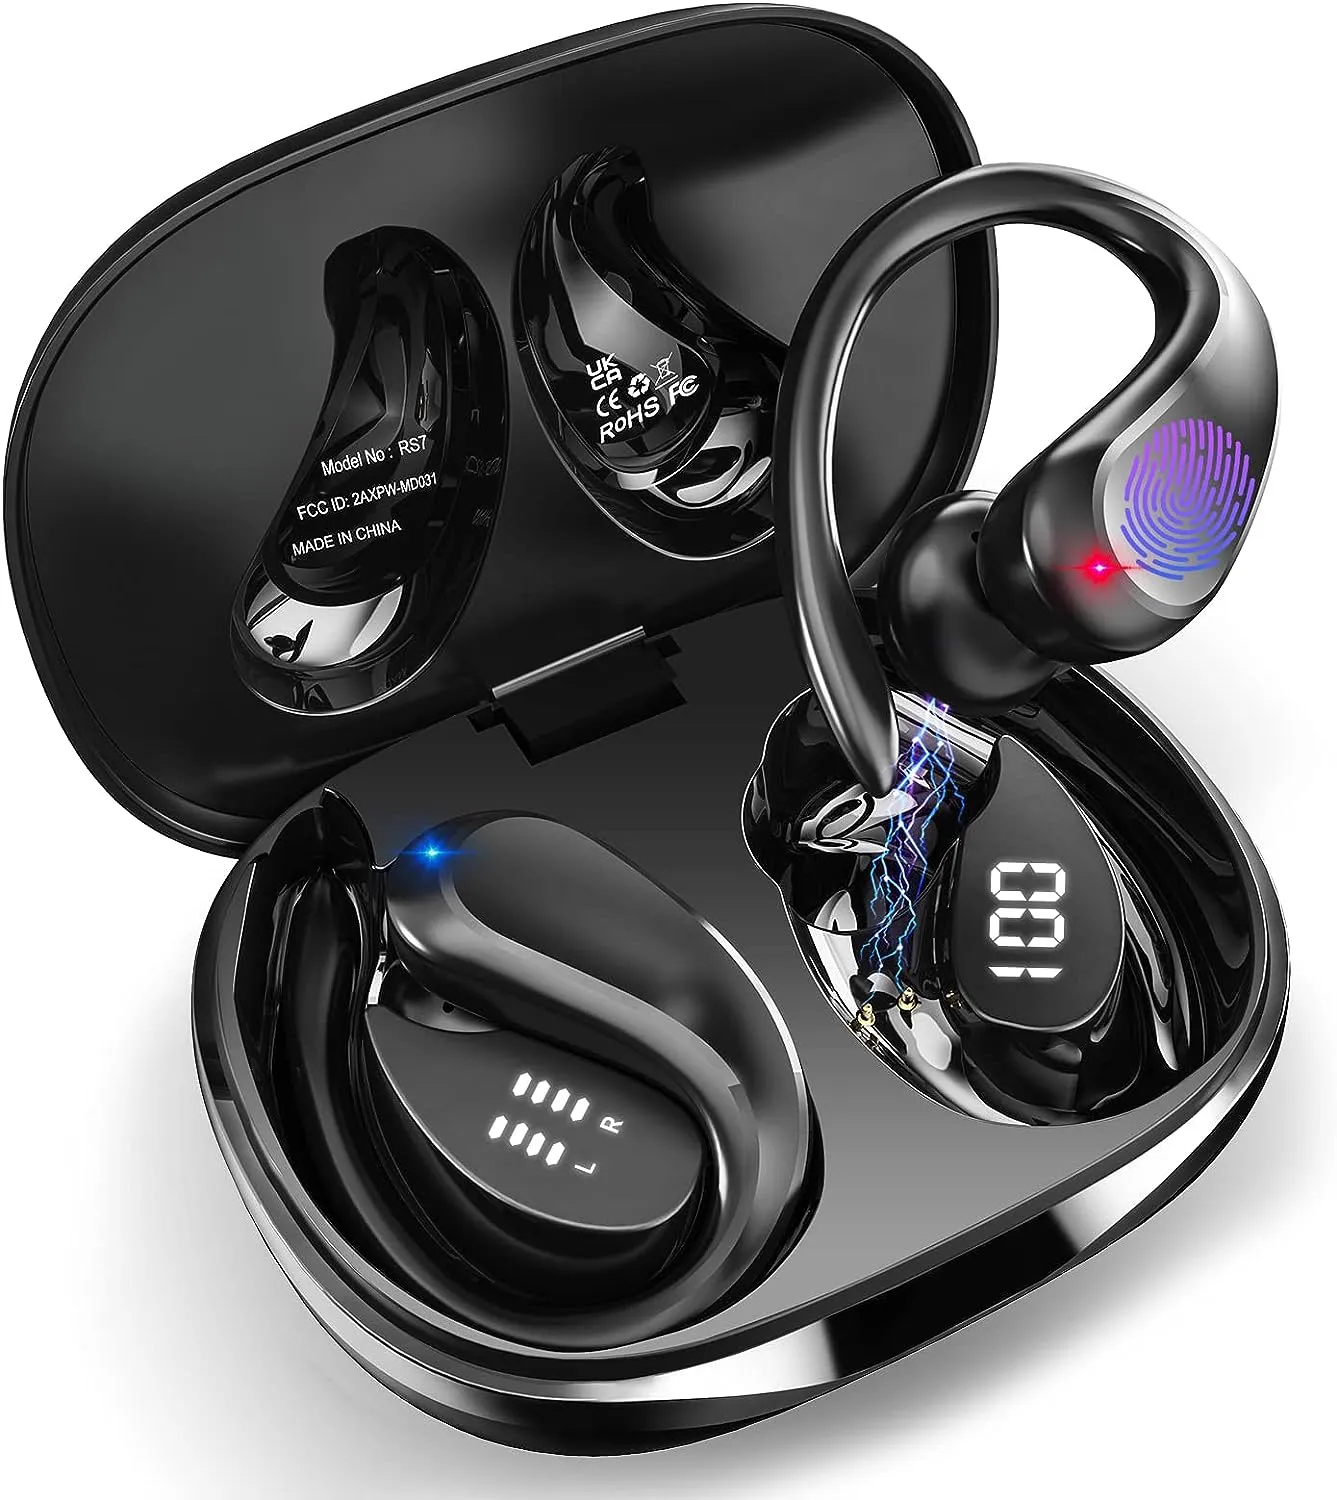 Fones de ouvido sem fio bluetooth 5.3 fones de ouvido 40hrs jogam fones de ouvido esportivos com tela de LED dupla, fones de ouvido Bluetooth IP7 à prova d'água com earhooks